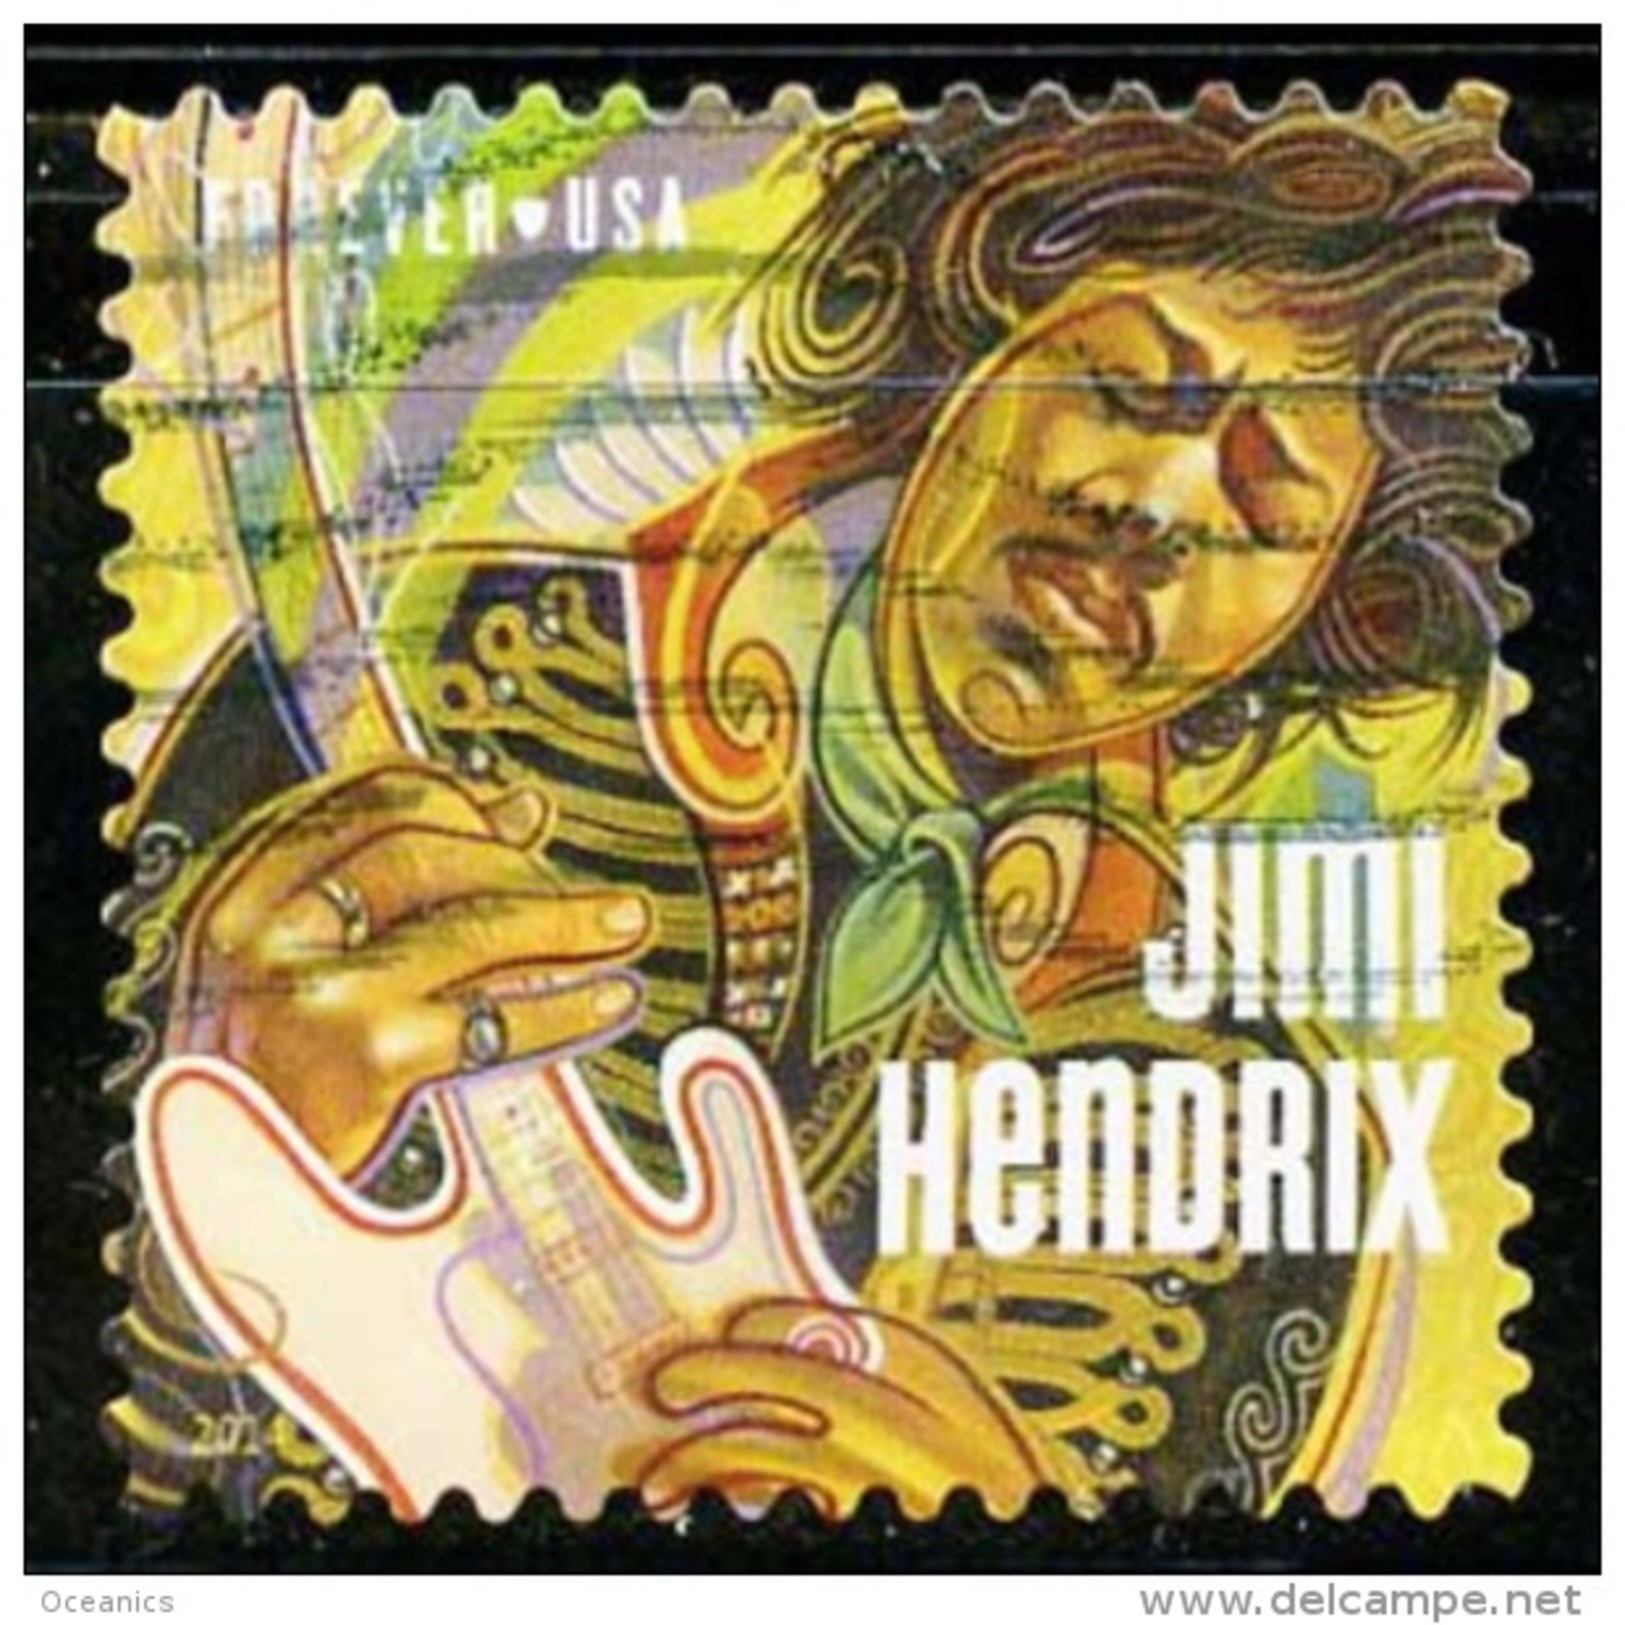 Etats-Unis / United States (Scott No.4880 - Jimmy Hendrix) (o) - Gebraucht